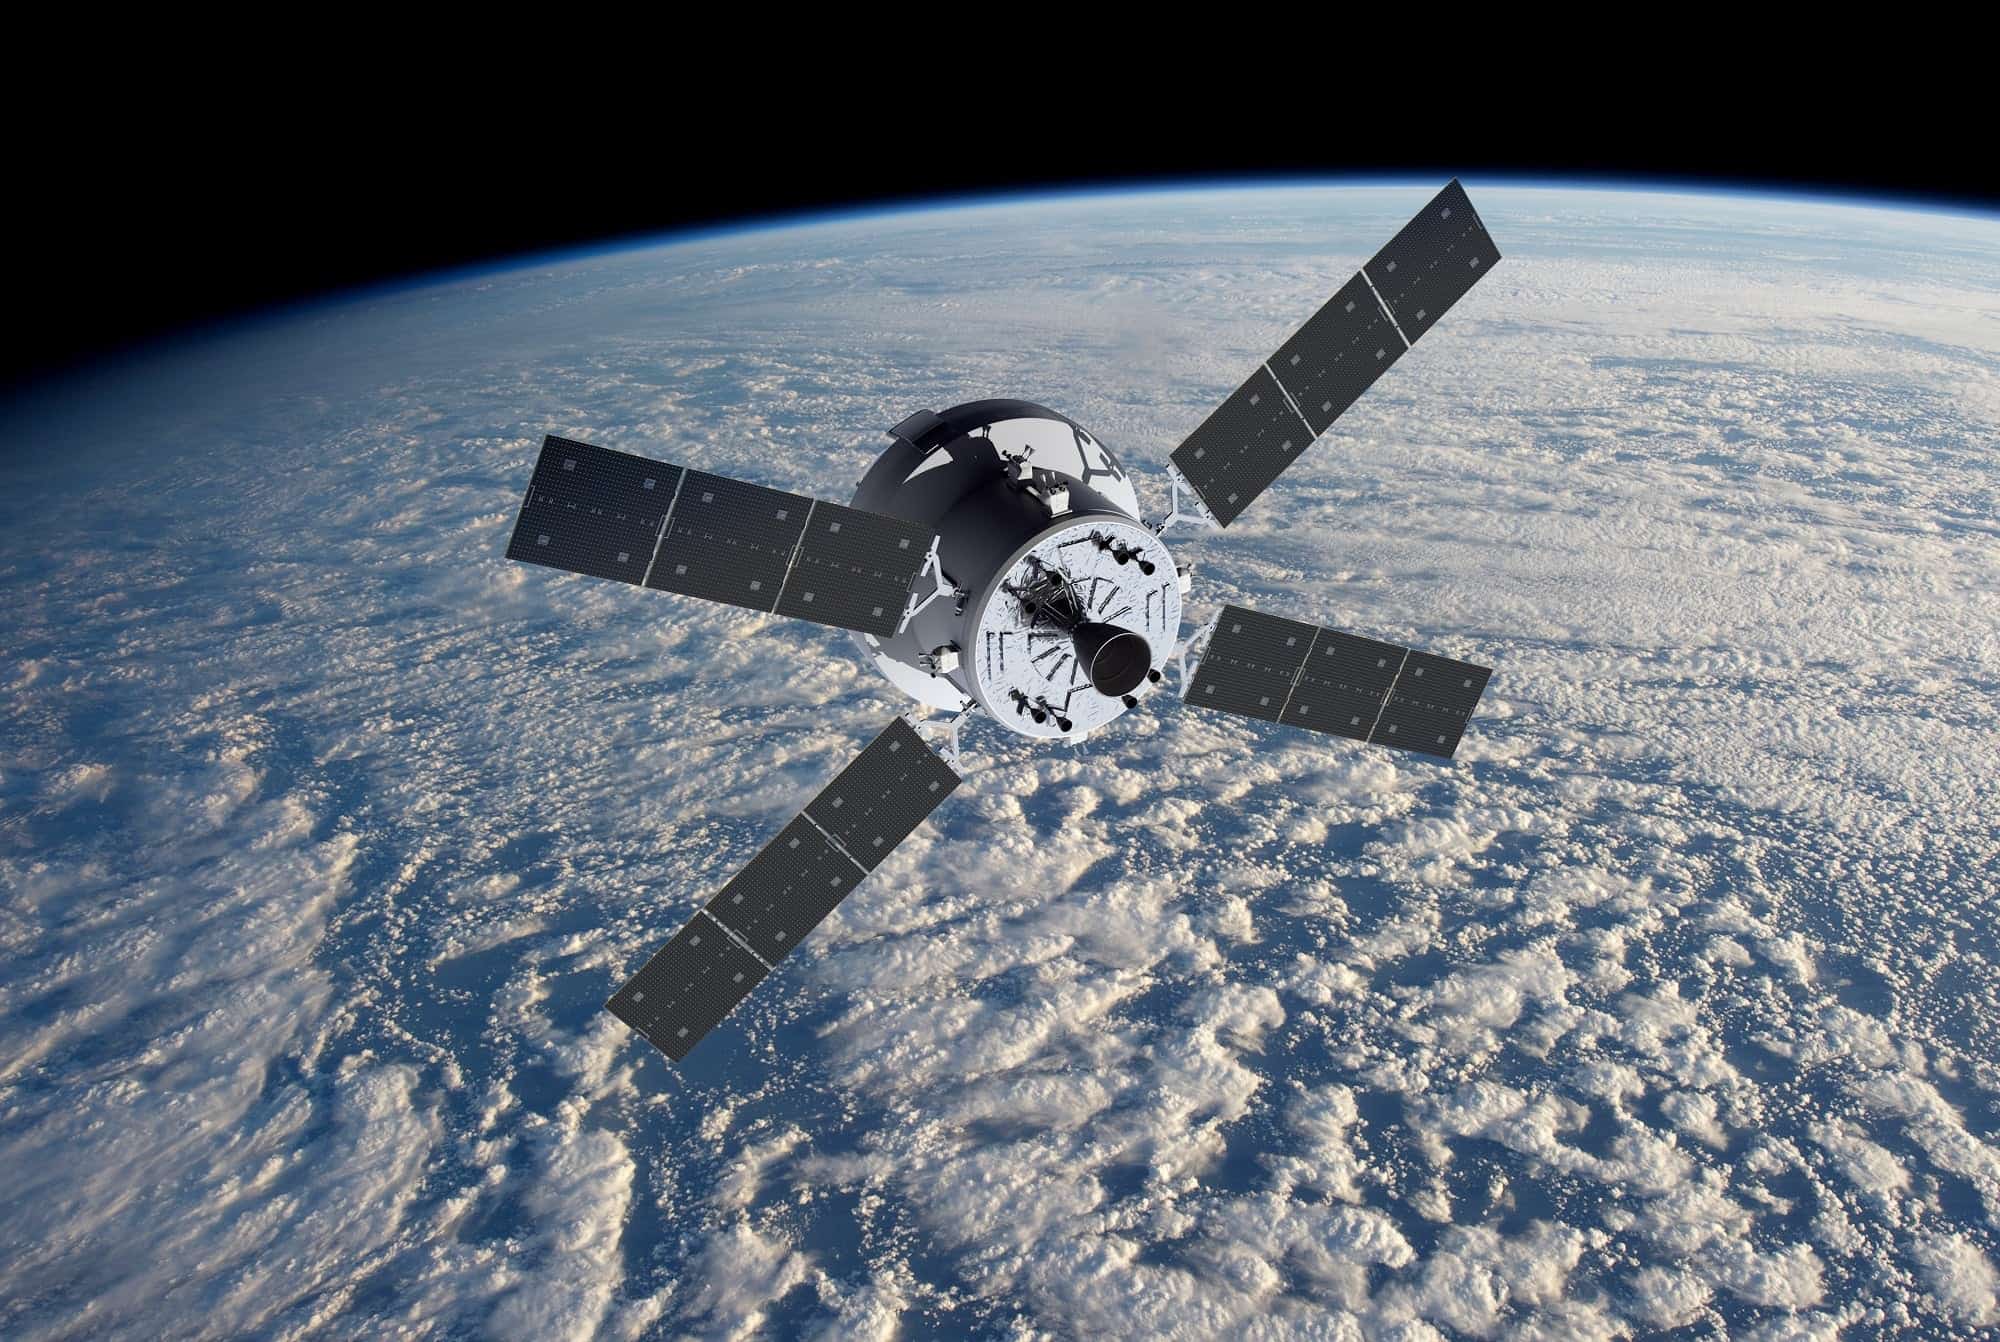 مجموعة الألواح الشمسية التابعة لوكالة الفضاء الأوروبية (ESA) أو أجنحة أوريون التابعة لناسا أثناء تحليقها فوق الأرض. (رسم توضيحي